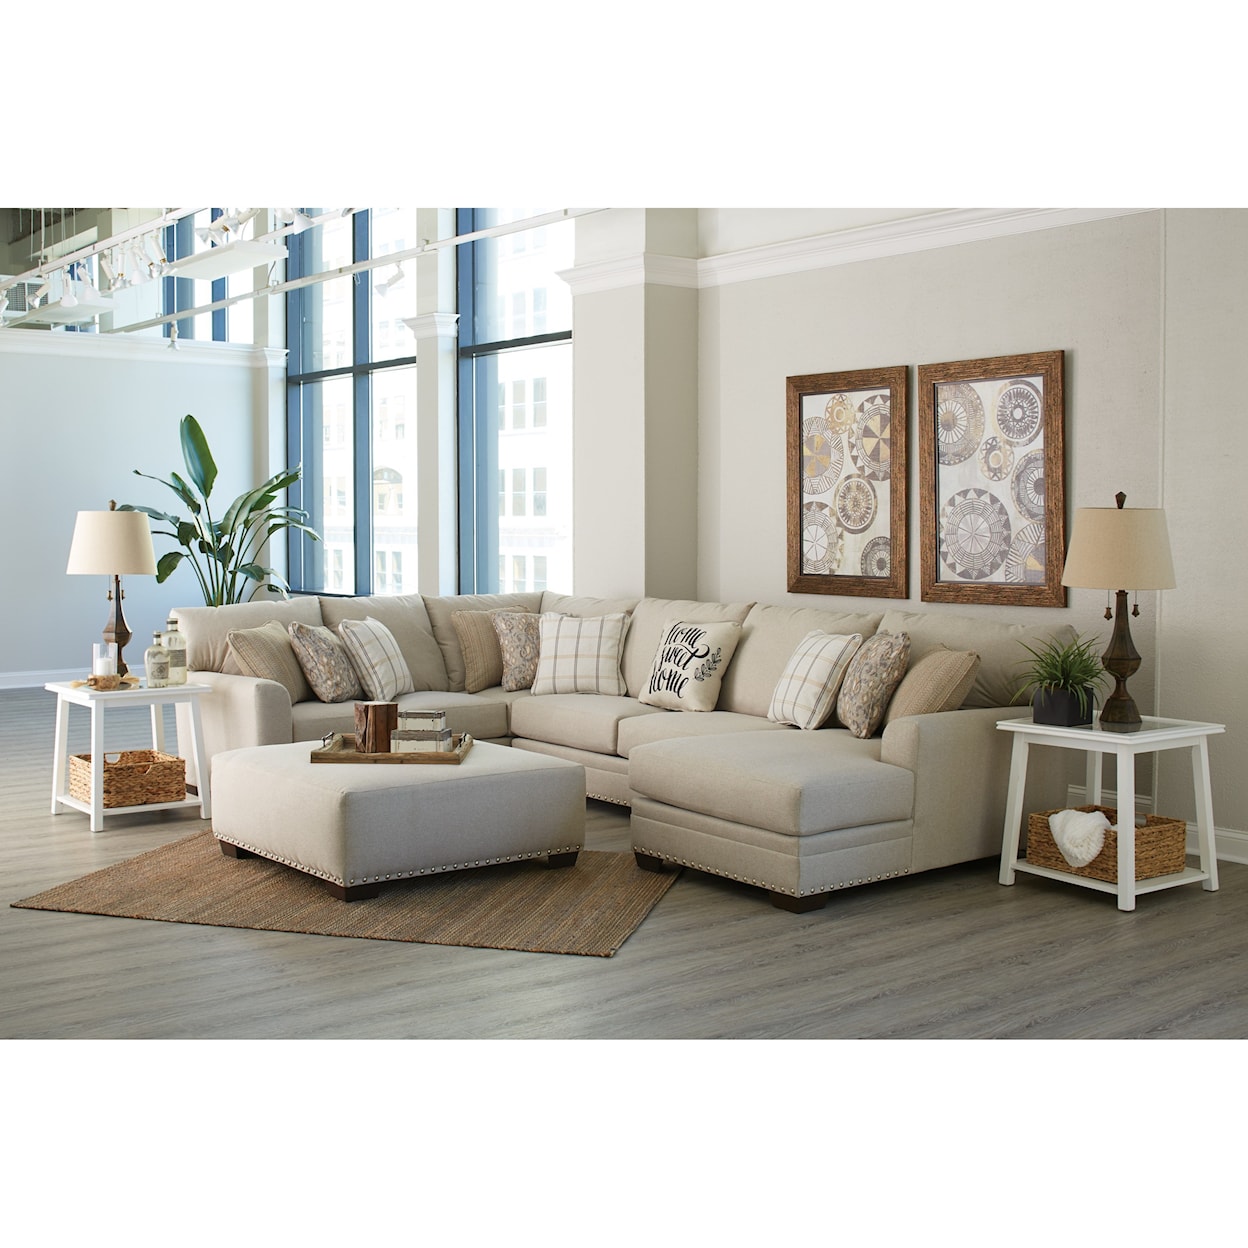 Jackson Furniture 4478 Middleton Living Room Group